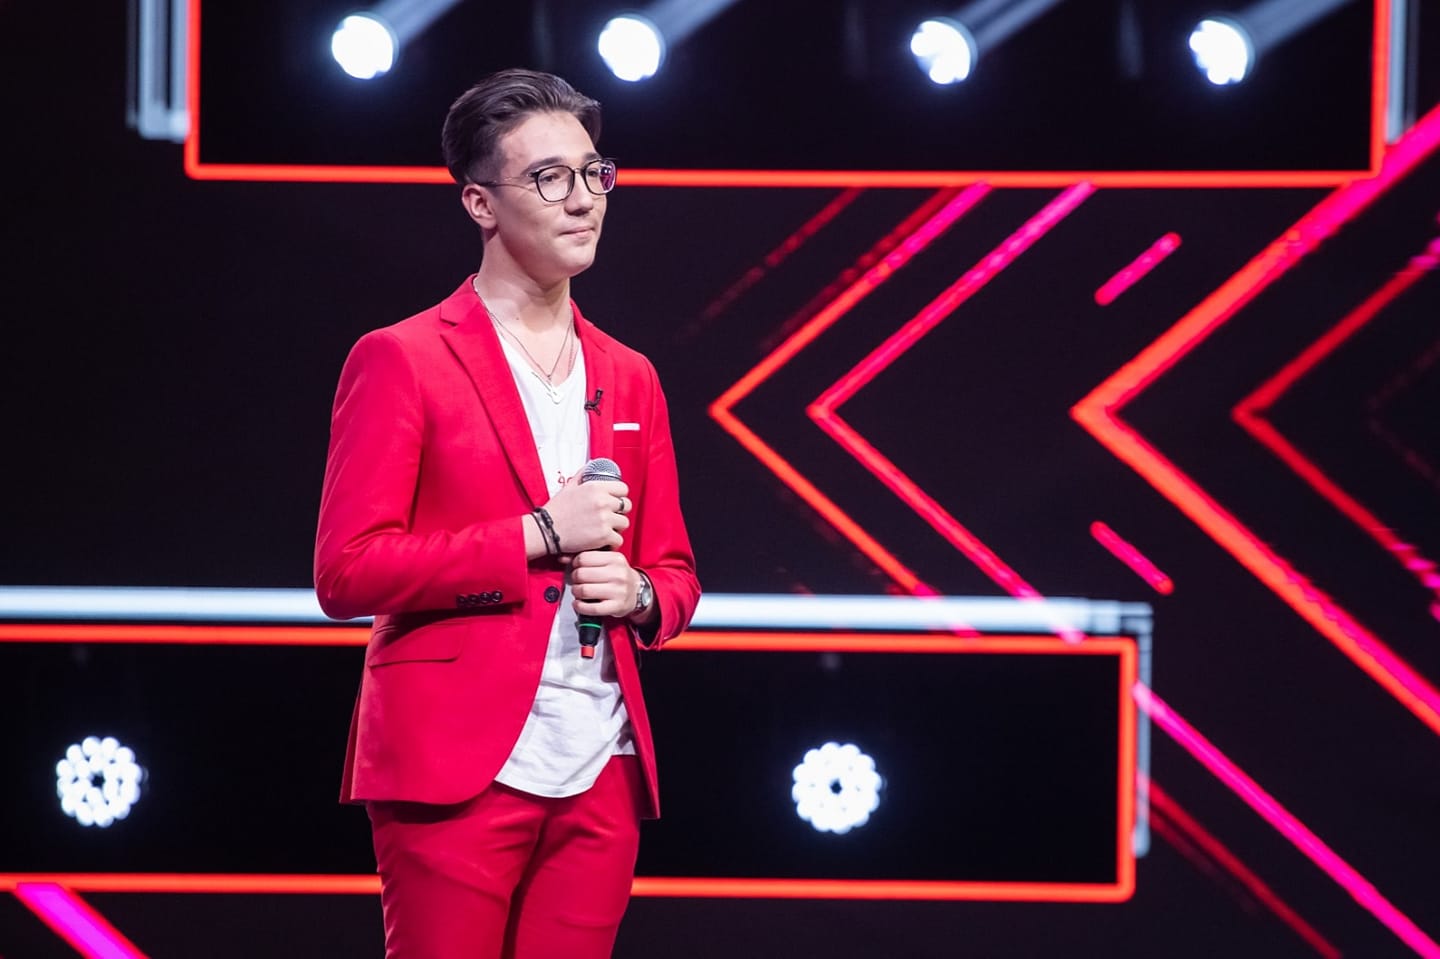 Reprezentantul României intră azi în semifinala Eurovision 2023